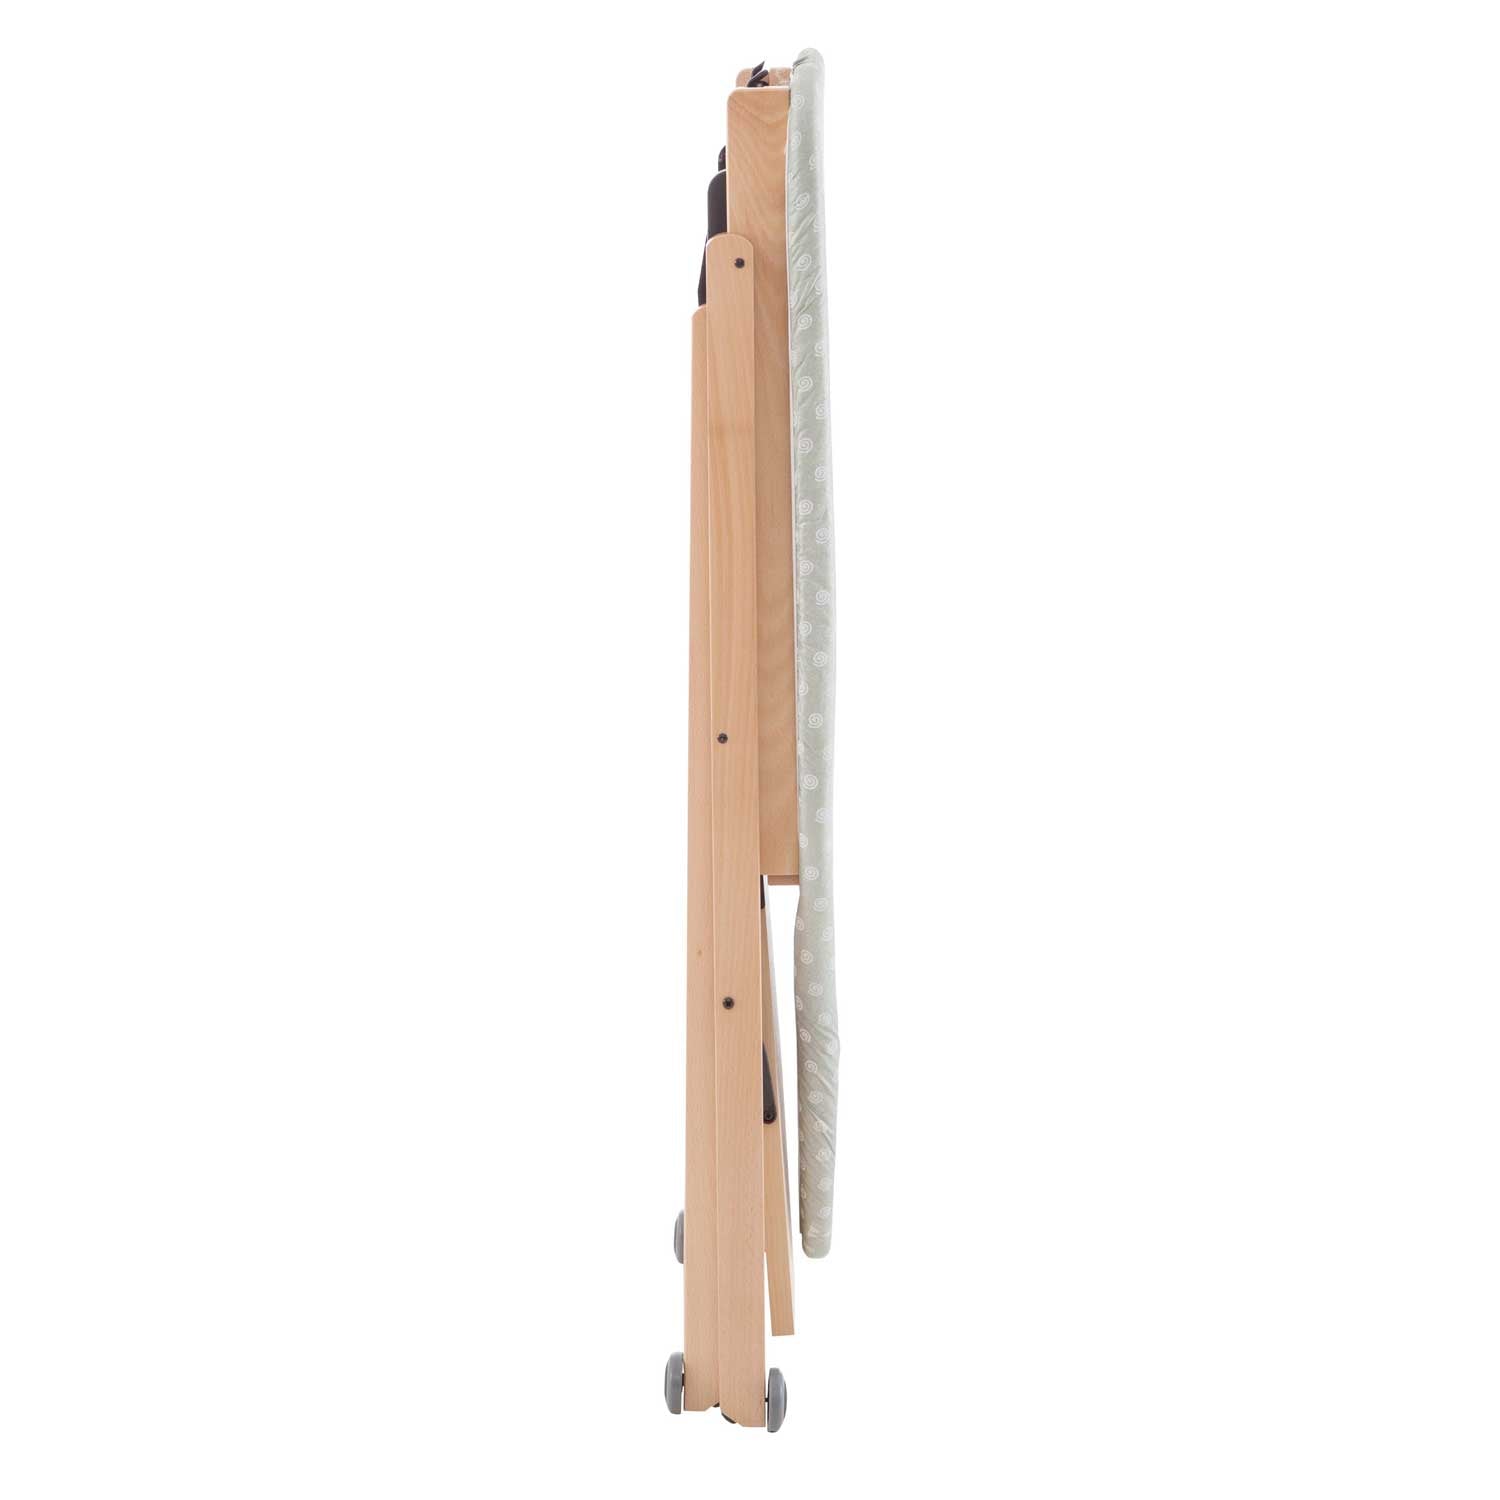 Bügeltisch, Bügelbrett Holz, Gestell aus massiver Buche, Bügelbrett Klappbar, Höhenverstellbar, Made in Italy, Stirocomodo, 4